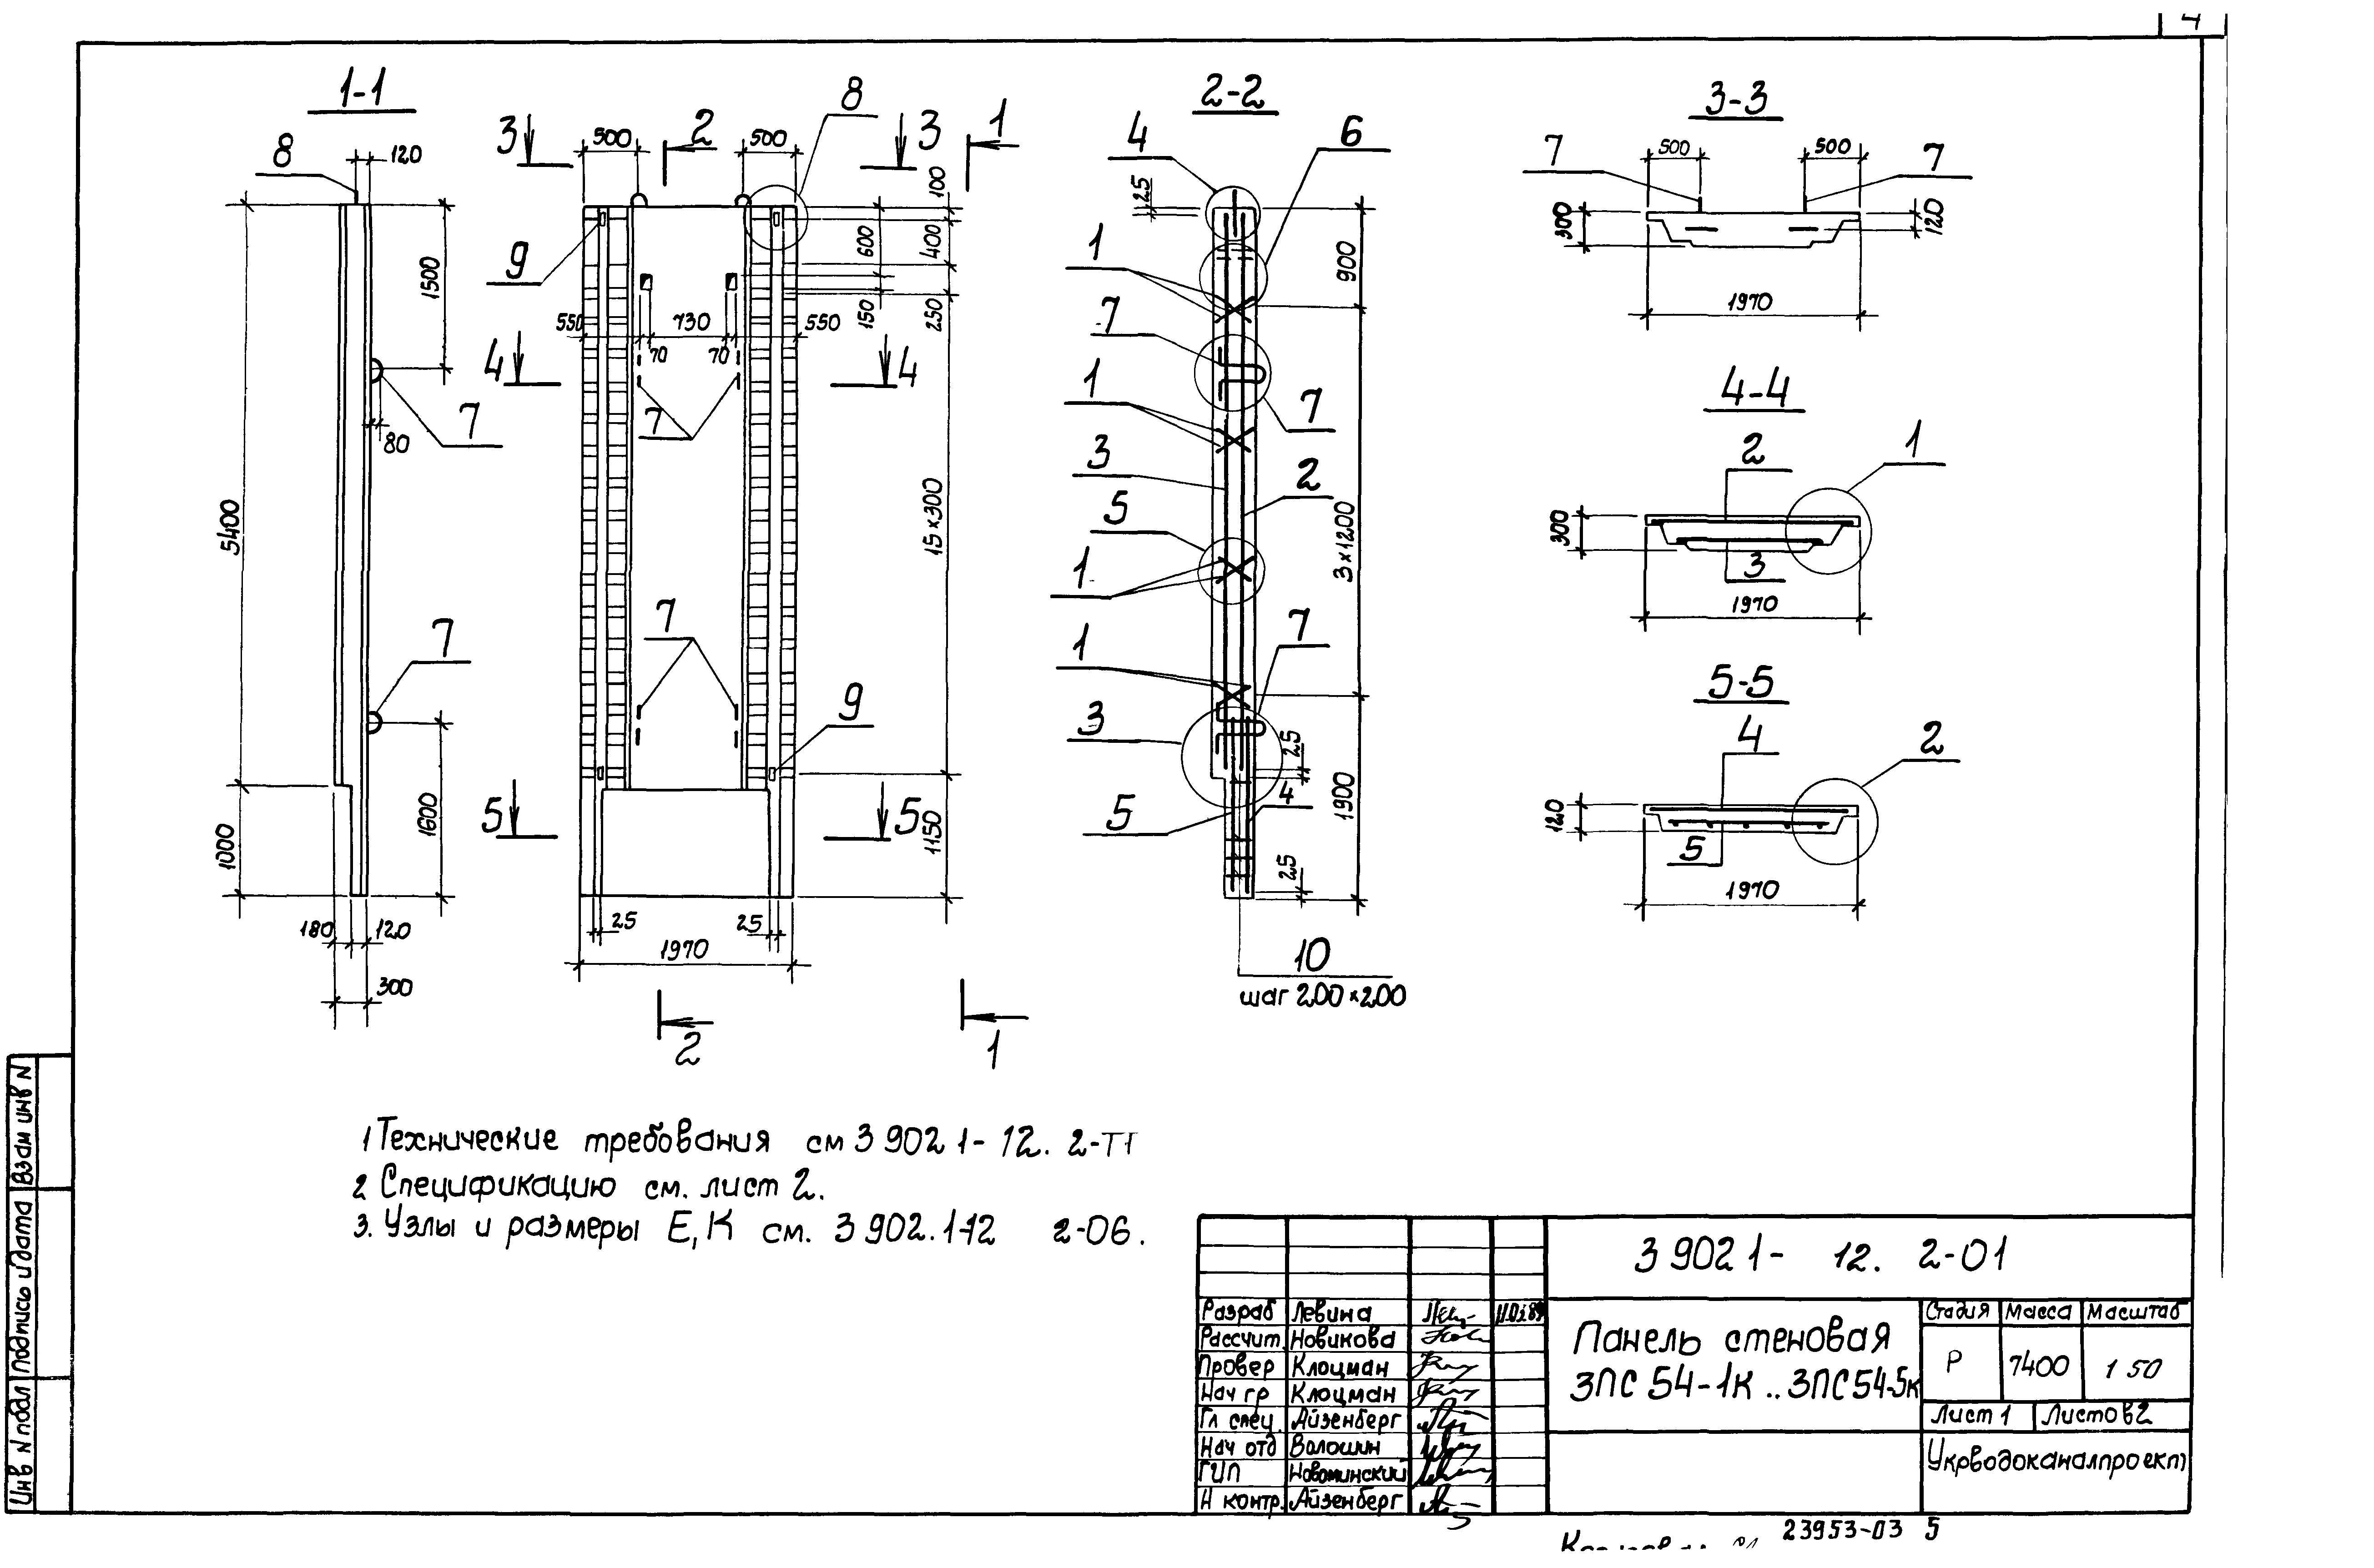 Панель стеновая 3ПС54-1к Серия 3.902.1-12, вып.2